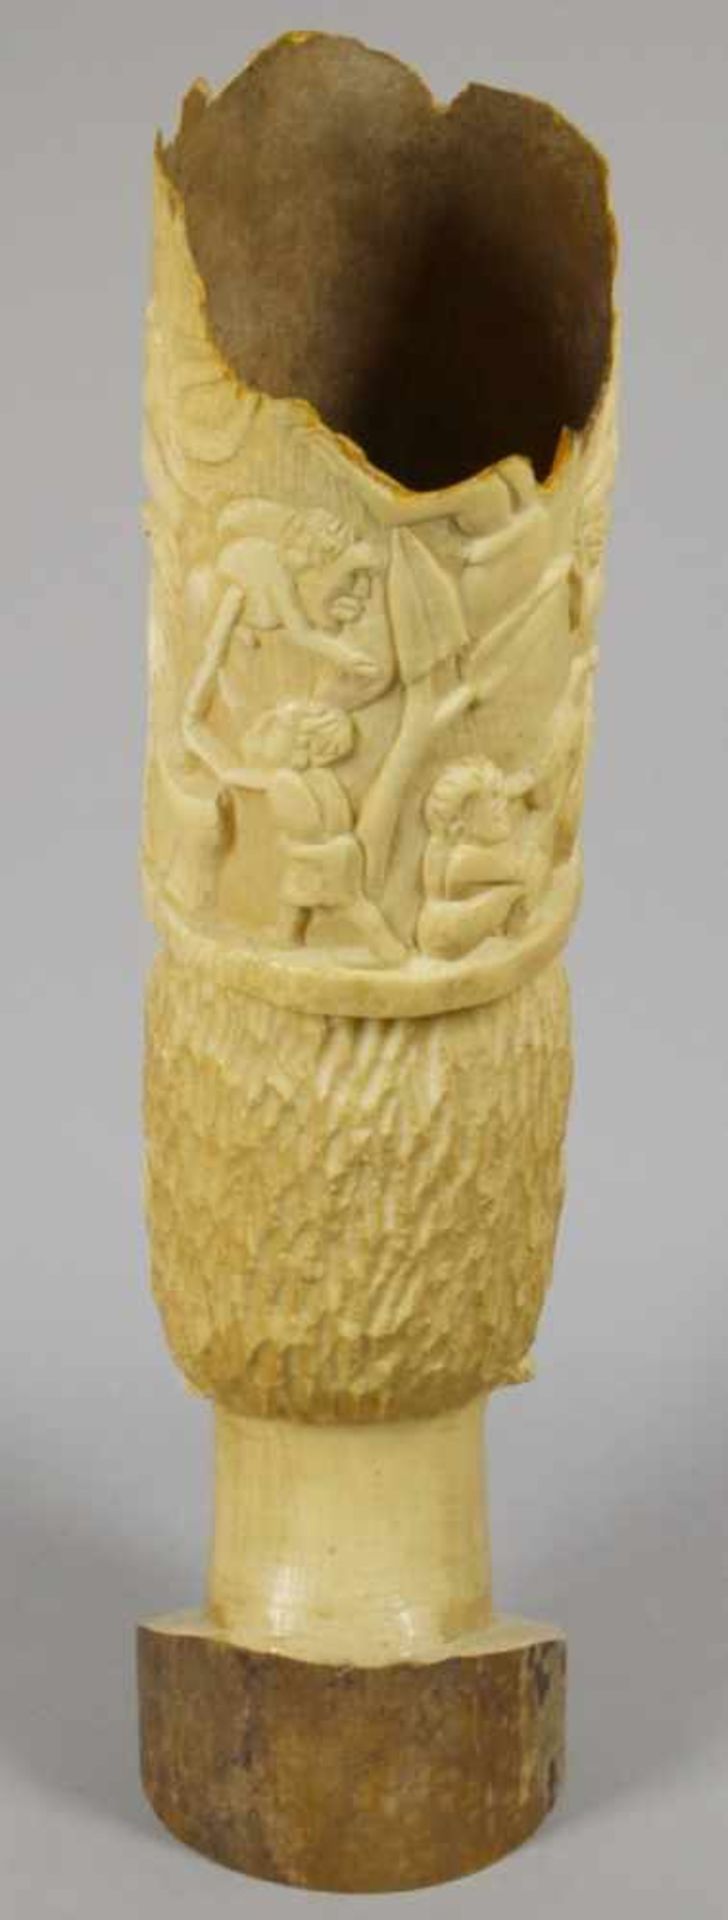 Elfenbein-Herrscherkopf, Afrika, um 1920, leicht gebogter Röhrenkorpus, plastischbeschnitzt mit - Bild 2 aus 6